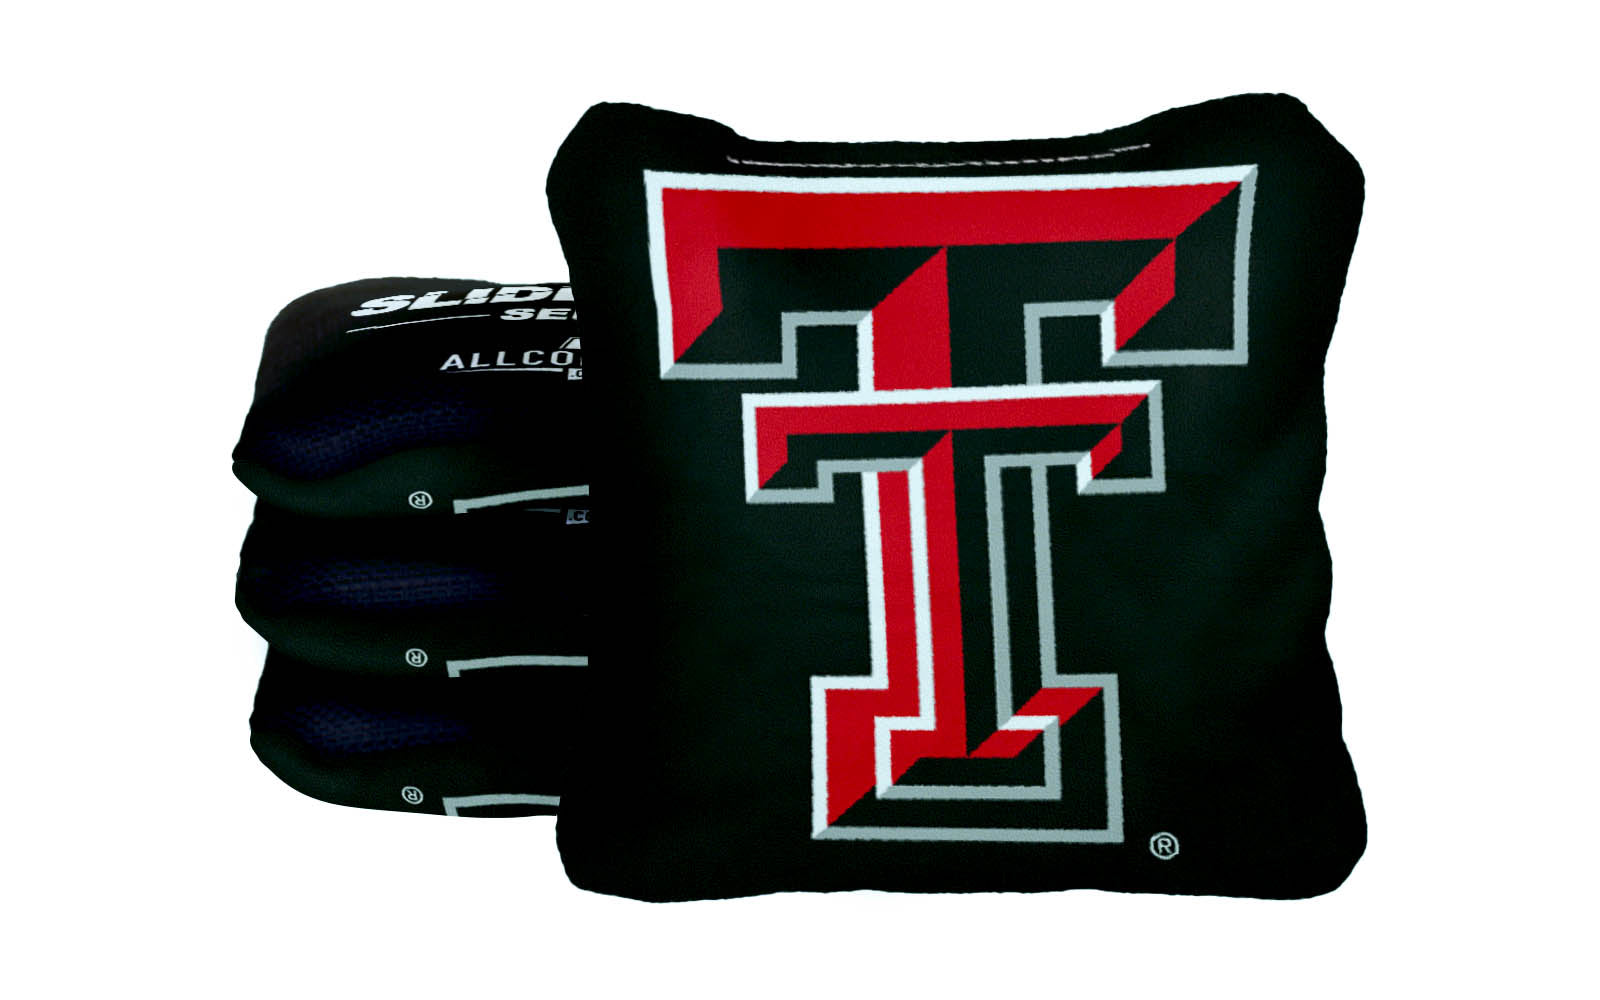 Officially Licensed Collegiate Cornhole Bags - AllCornhole Slide Rite - Set of 4 - Texas Tech University